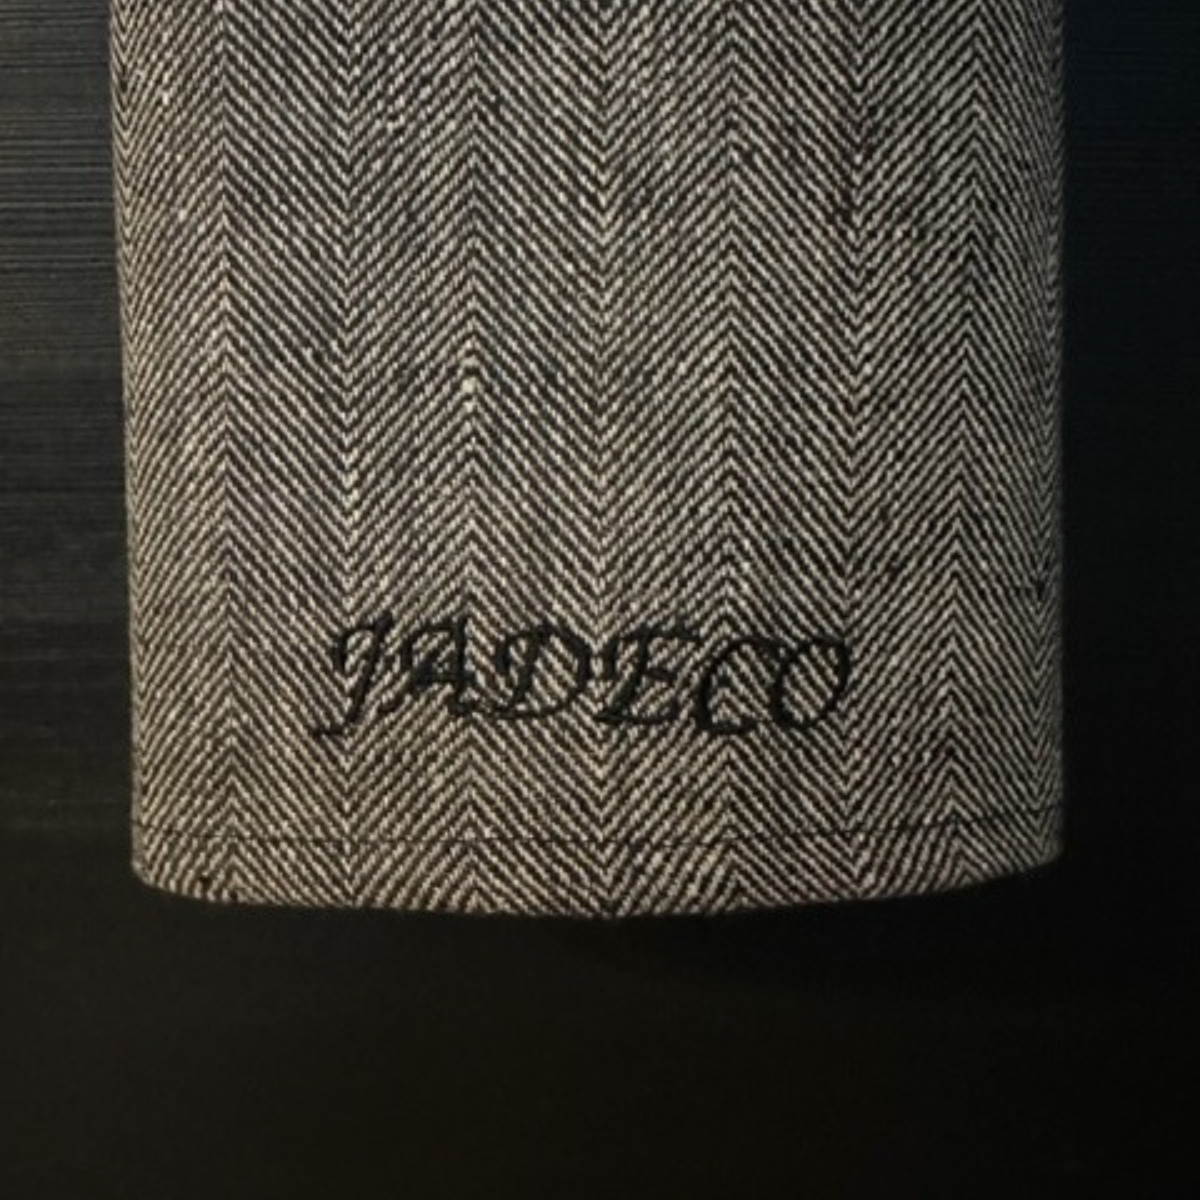 Jadeco Living - Keittiöpyyhe/käsipyyhe musta-harmaa (kalanruoto) 45 x 65 cm